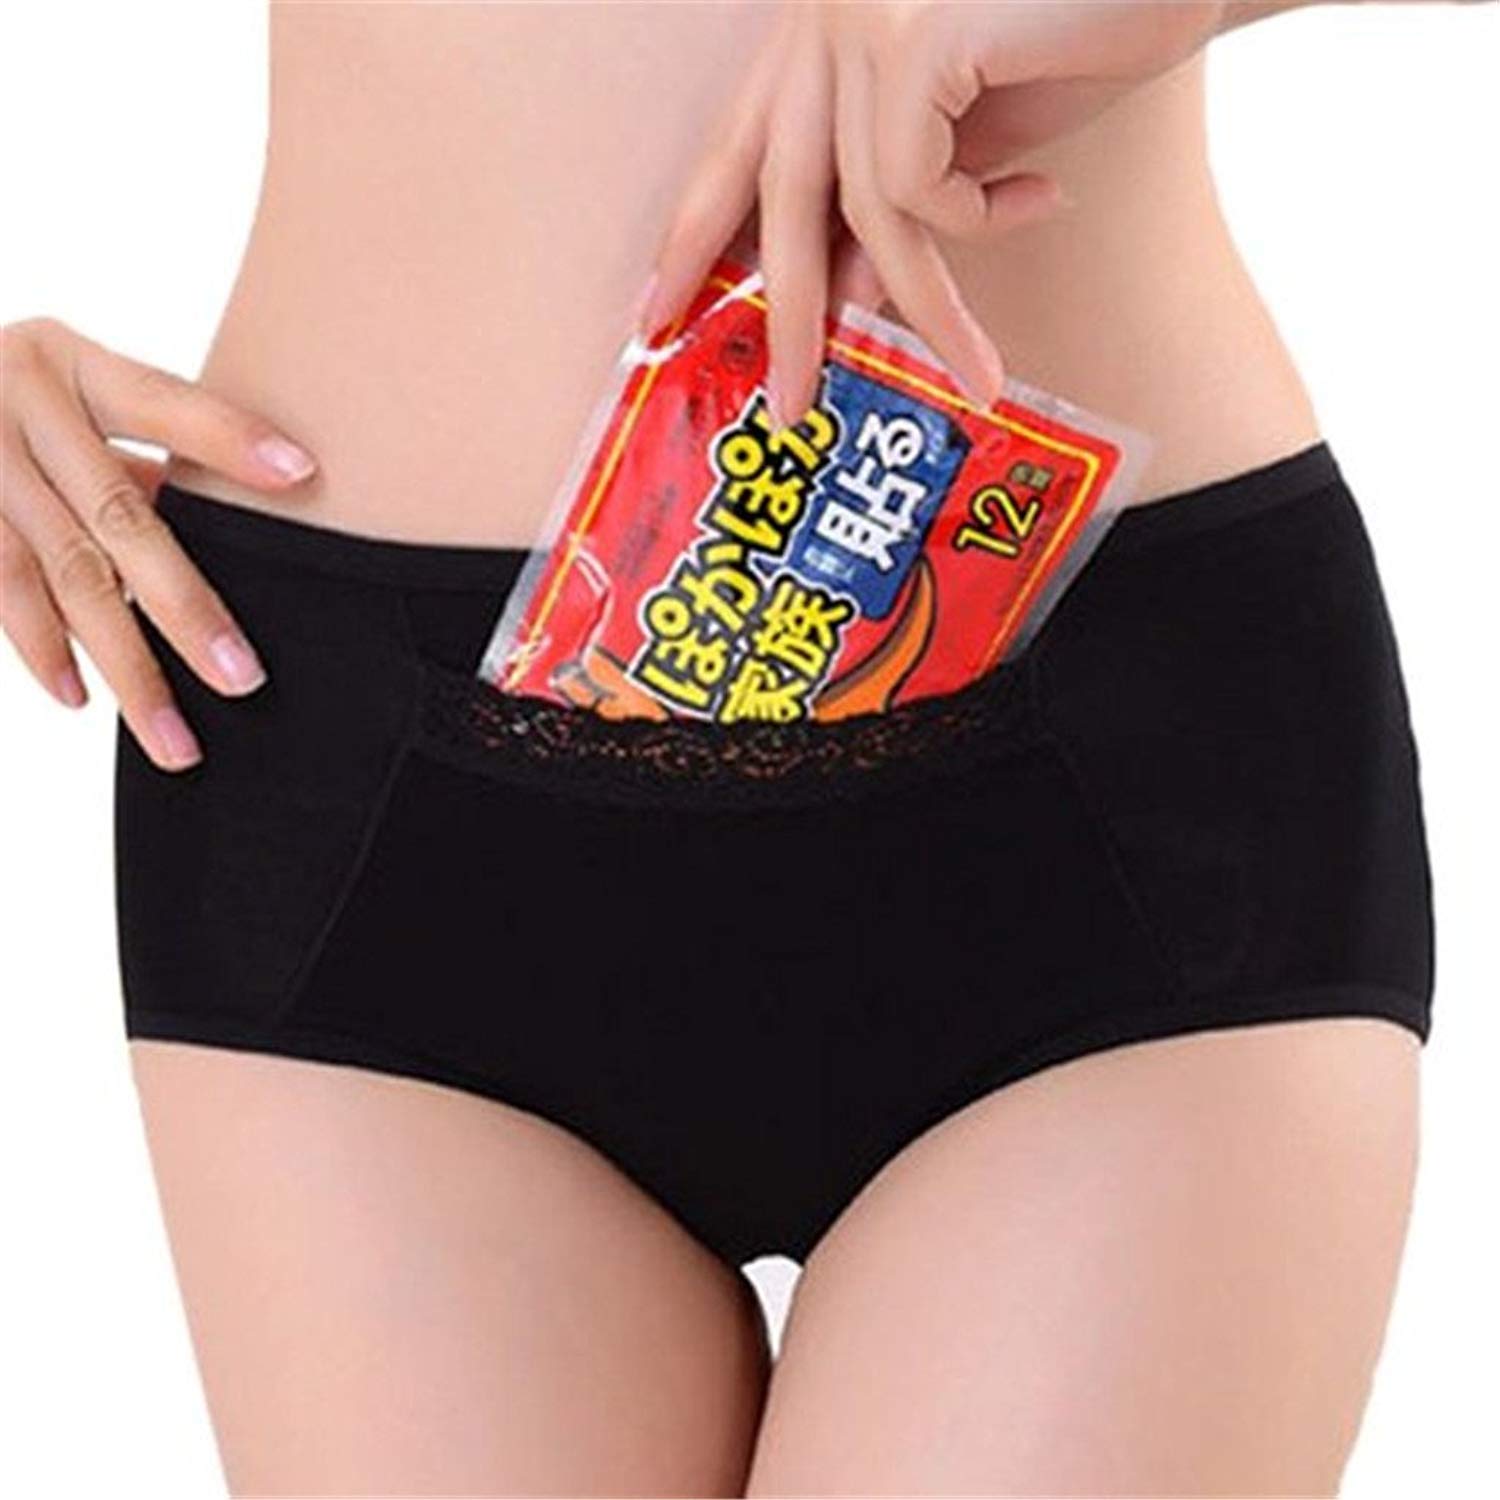 Pockets in Panties